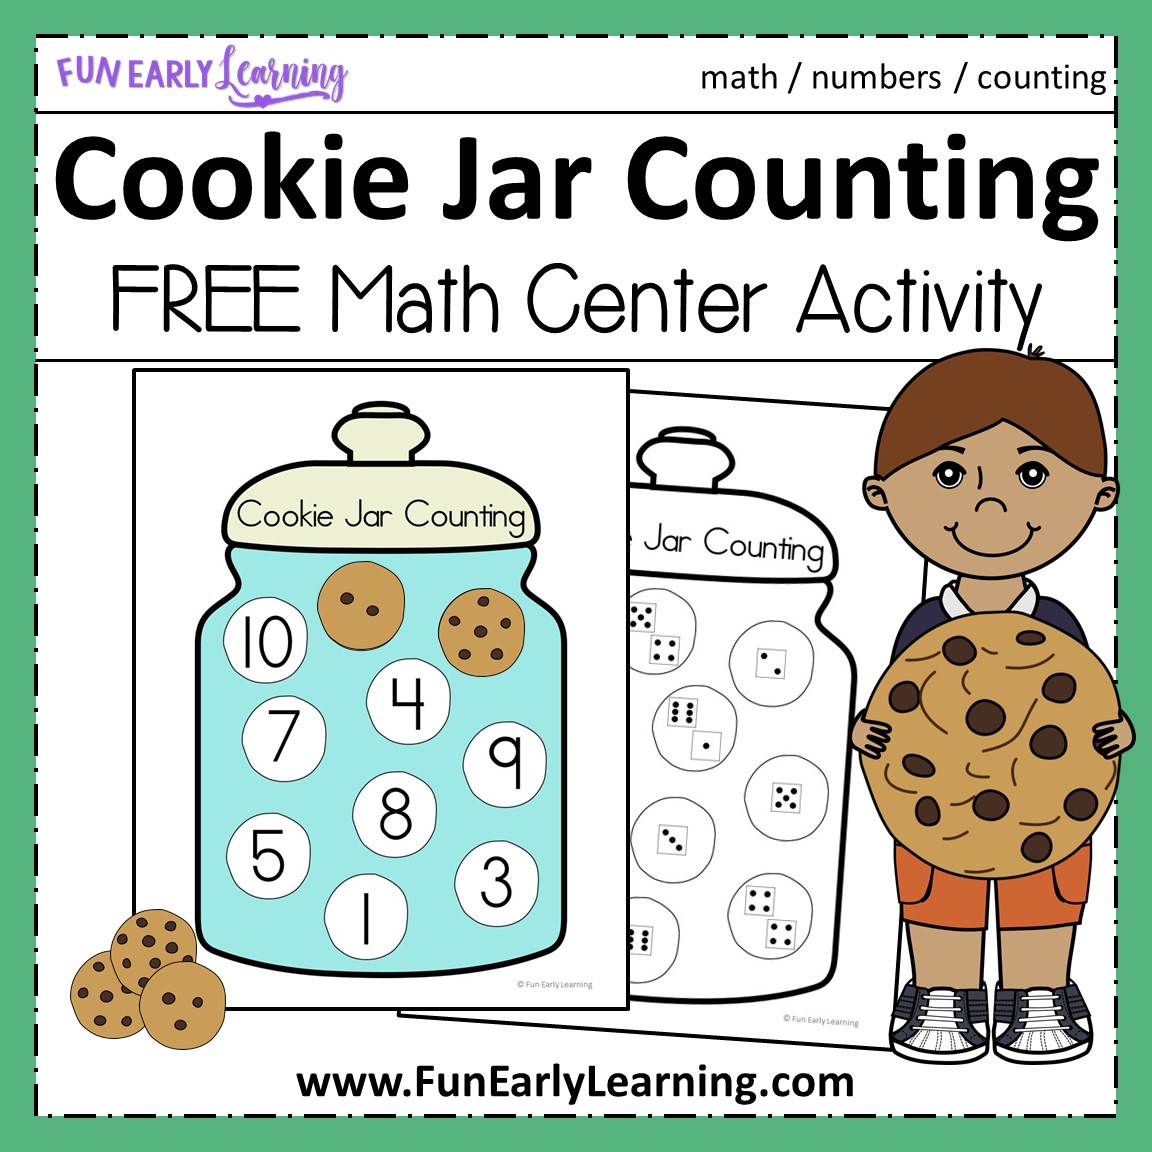 Fun Cookie Jar Counting Activity for Preschool and Kindergarten.